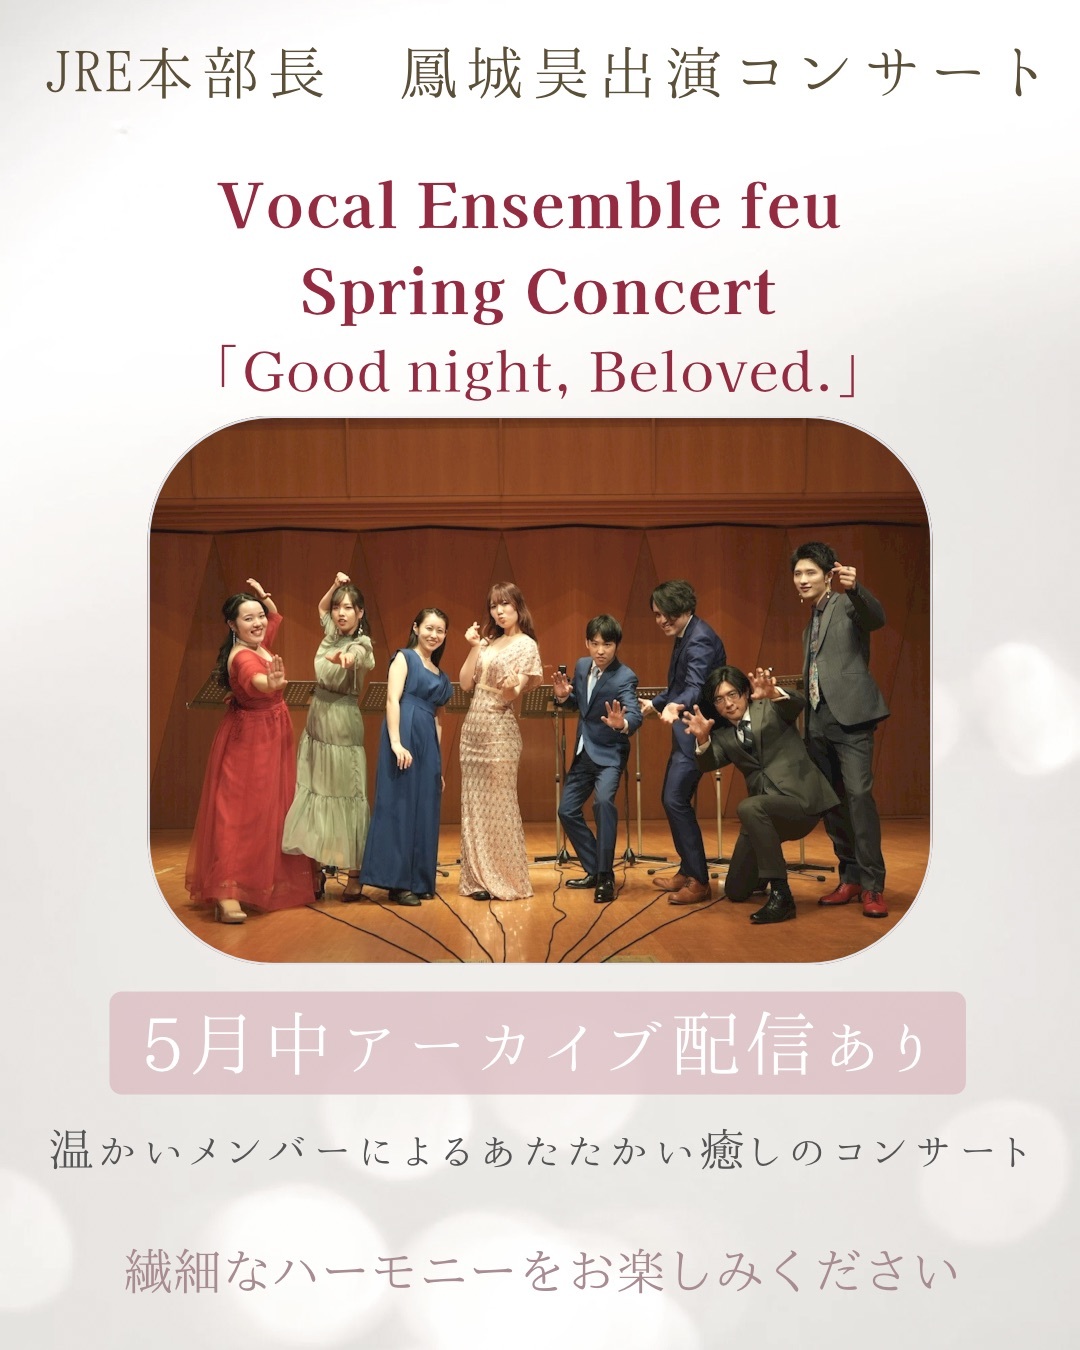 【母の日の贈り物にもピッタリ】Vocal Ensemble feu Spring Concertアーカイブ_a0157409_11150647.jpeg